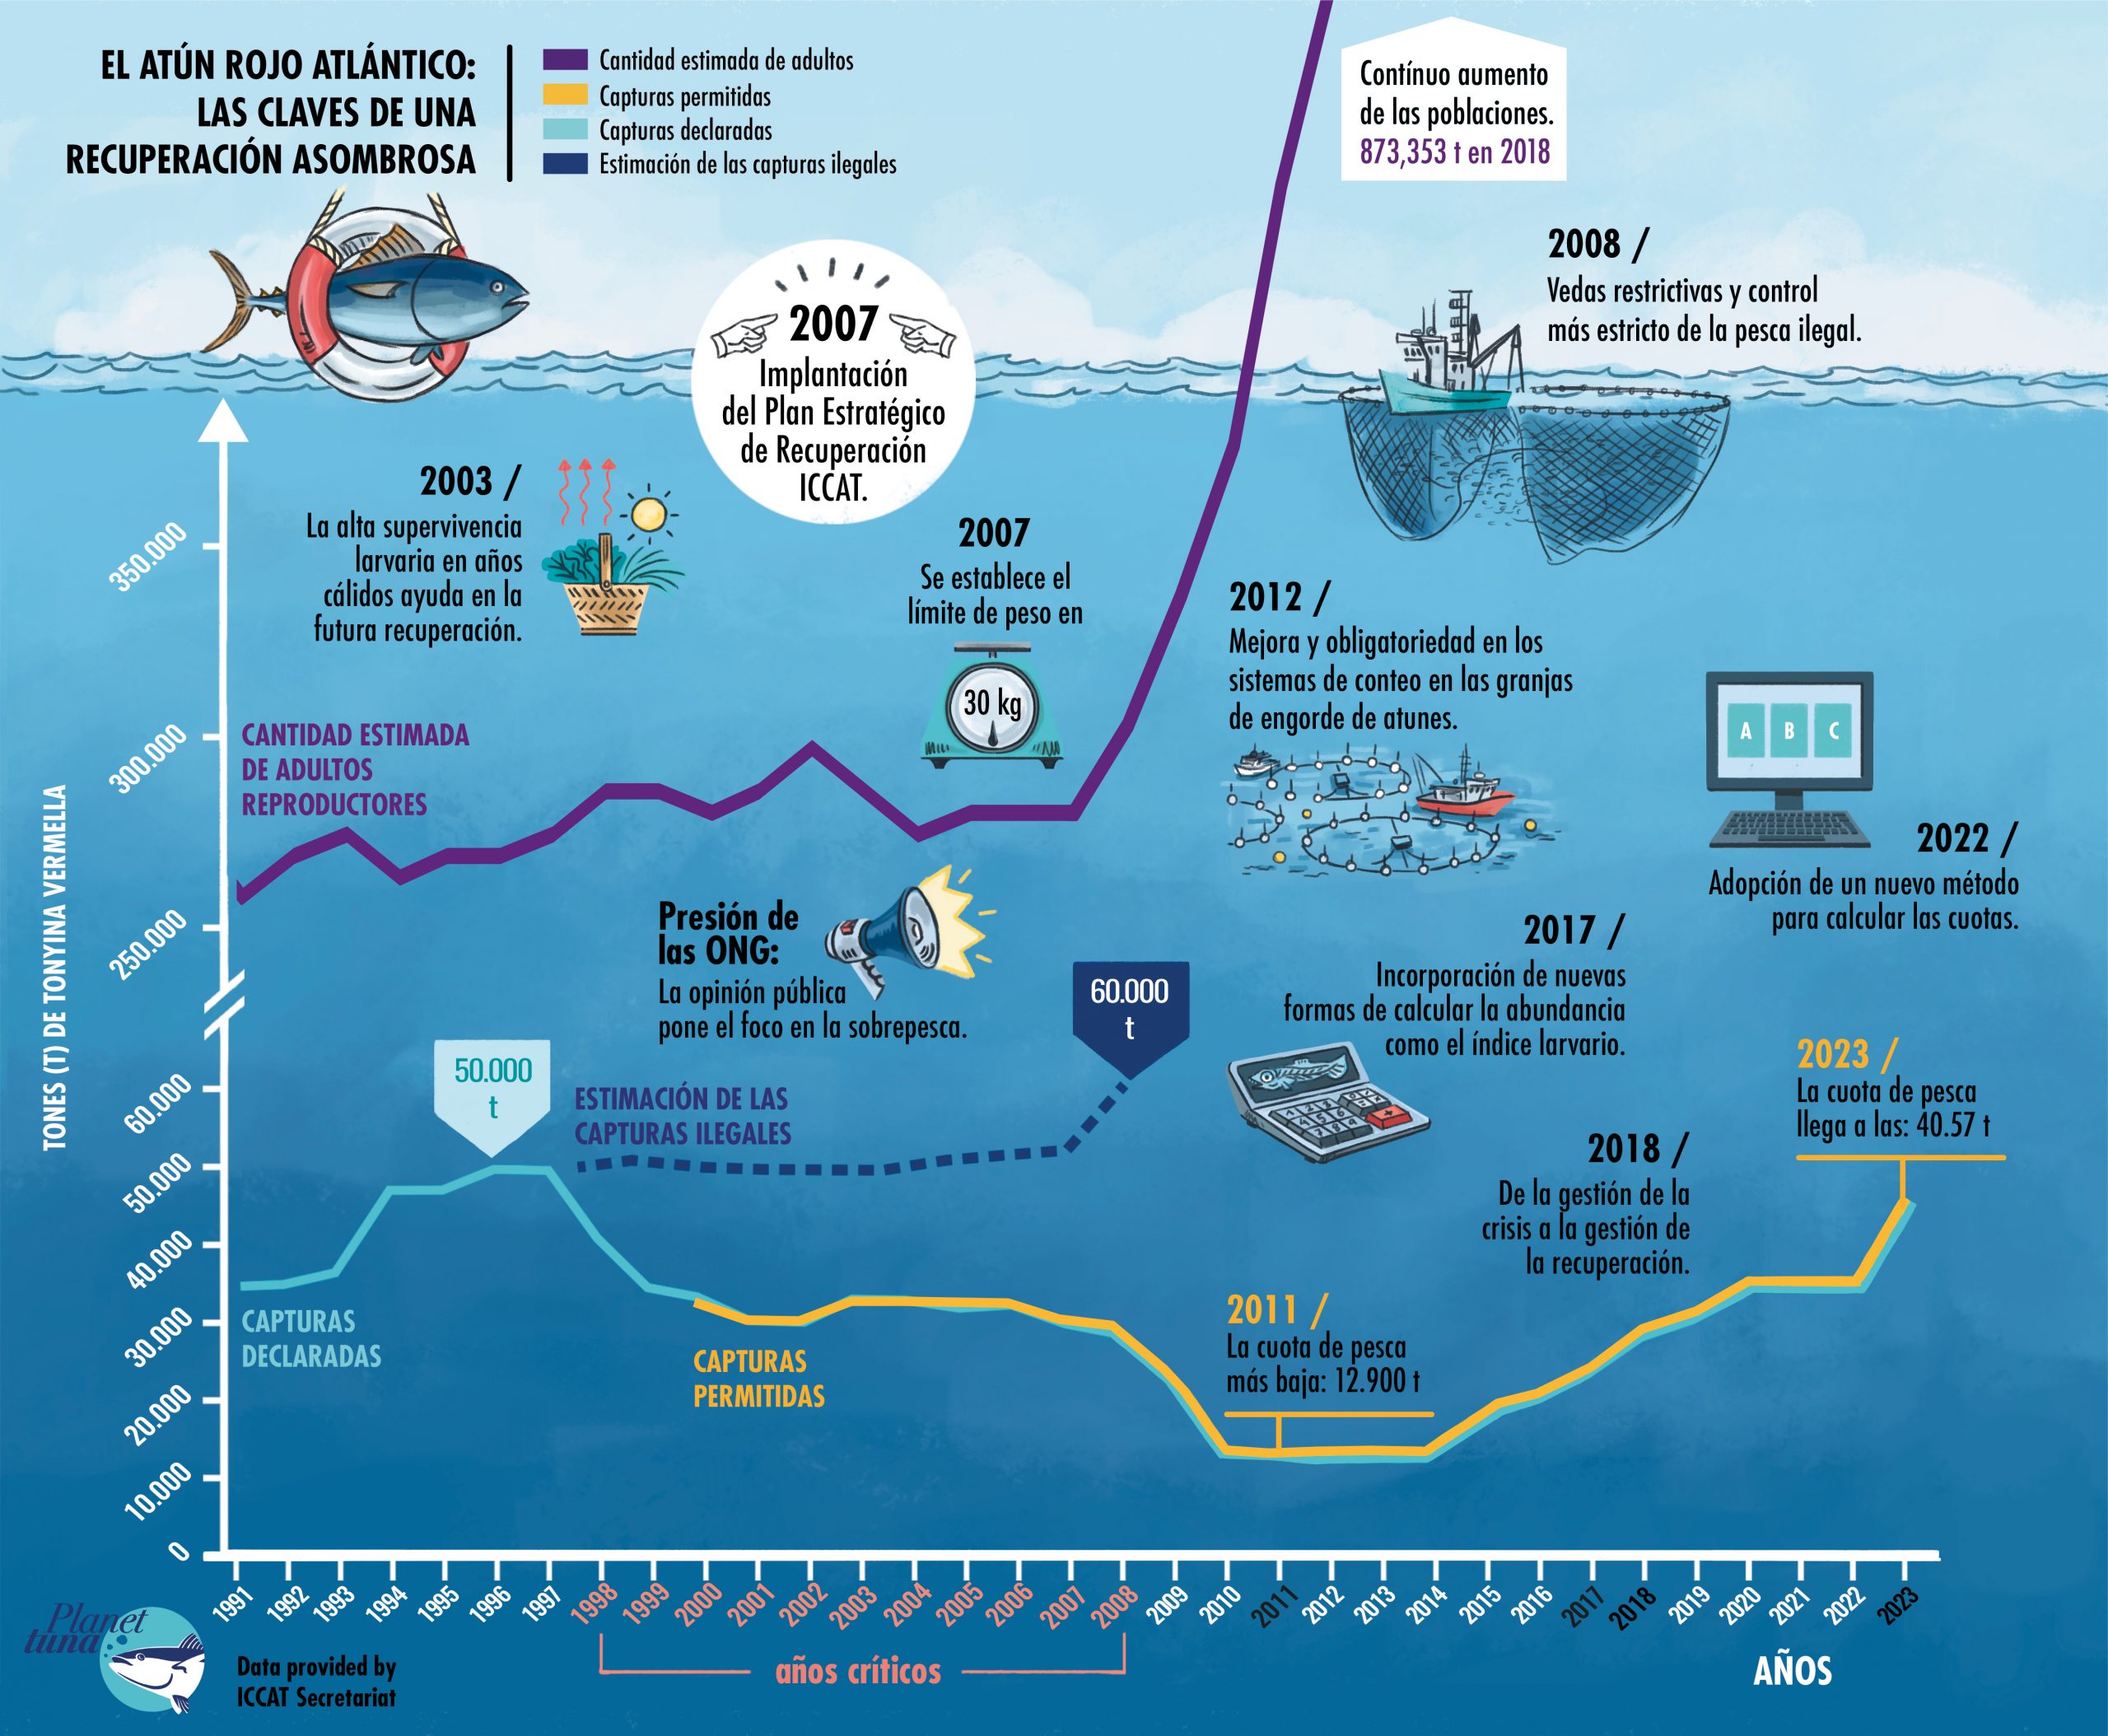 Gráfica con la evolución de las toneladas de atún rojo permitidas, declaradas y las ilegales estimadas, entre 1991 y 2020. Los principales hitos en la gestión de esta especie también se señalan.